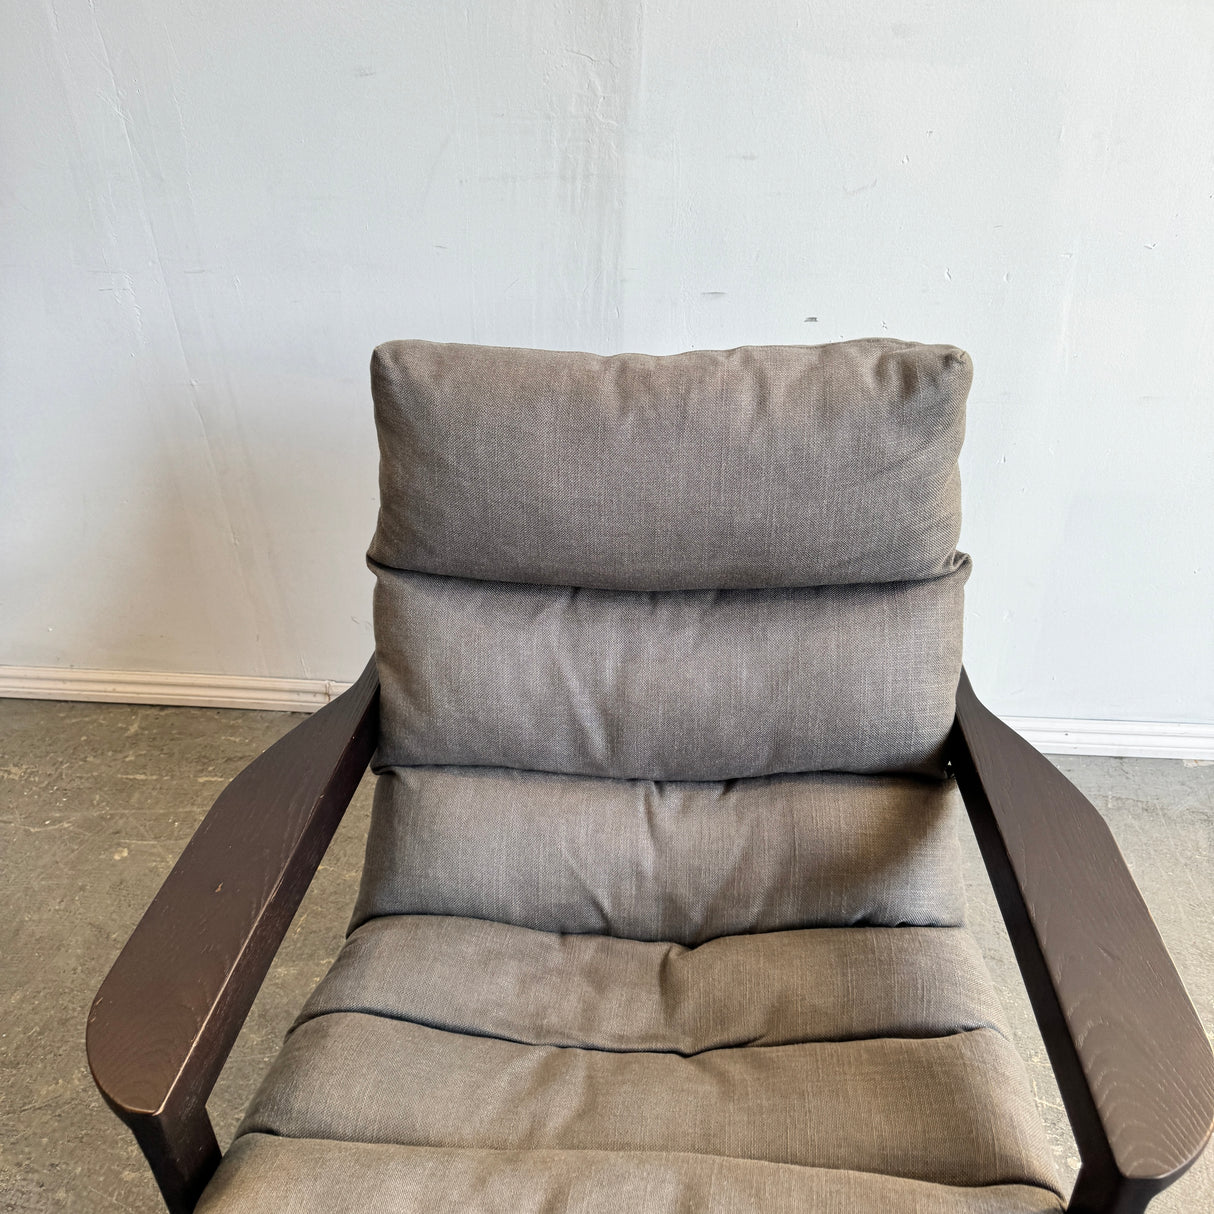 Ipanema Lounge Chair by Poliform